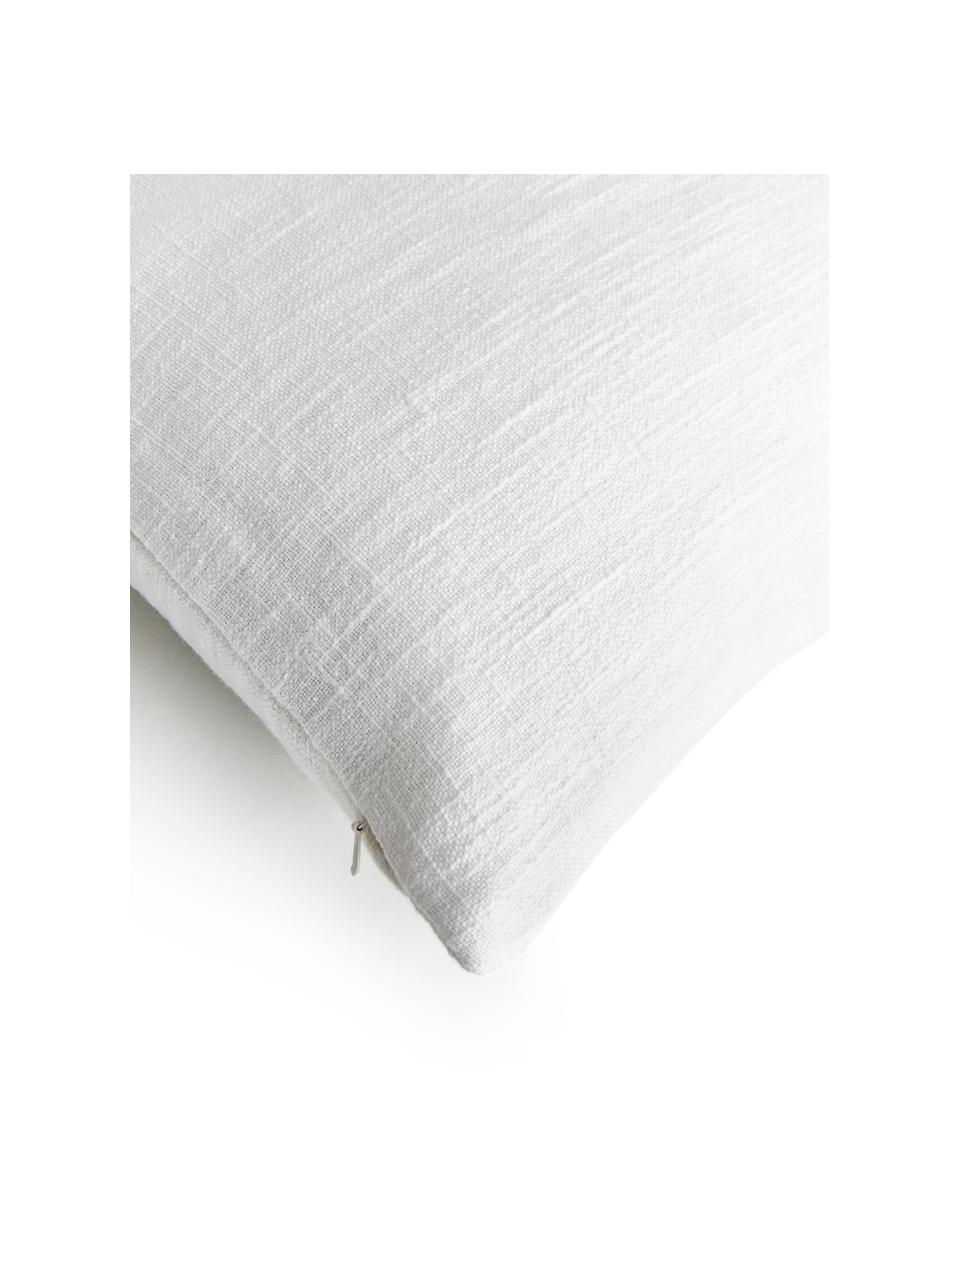 Baumwoll-Kissenhülle Terre mit dekorativer Naht, 80% Baumwolle, 20% Leinen, Weiß, B 30 x L 50 cm